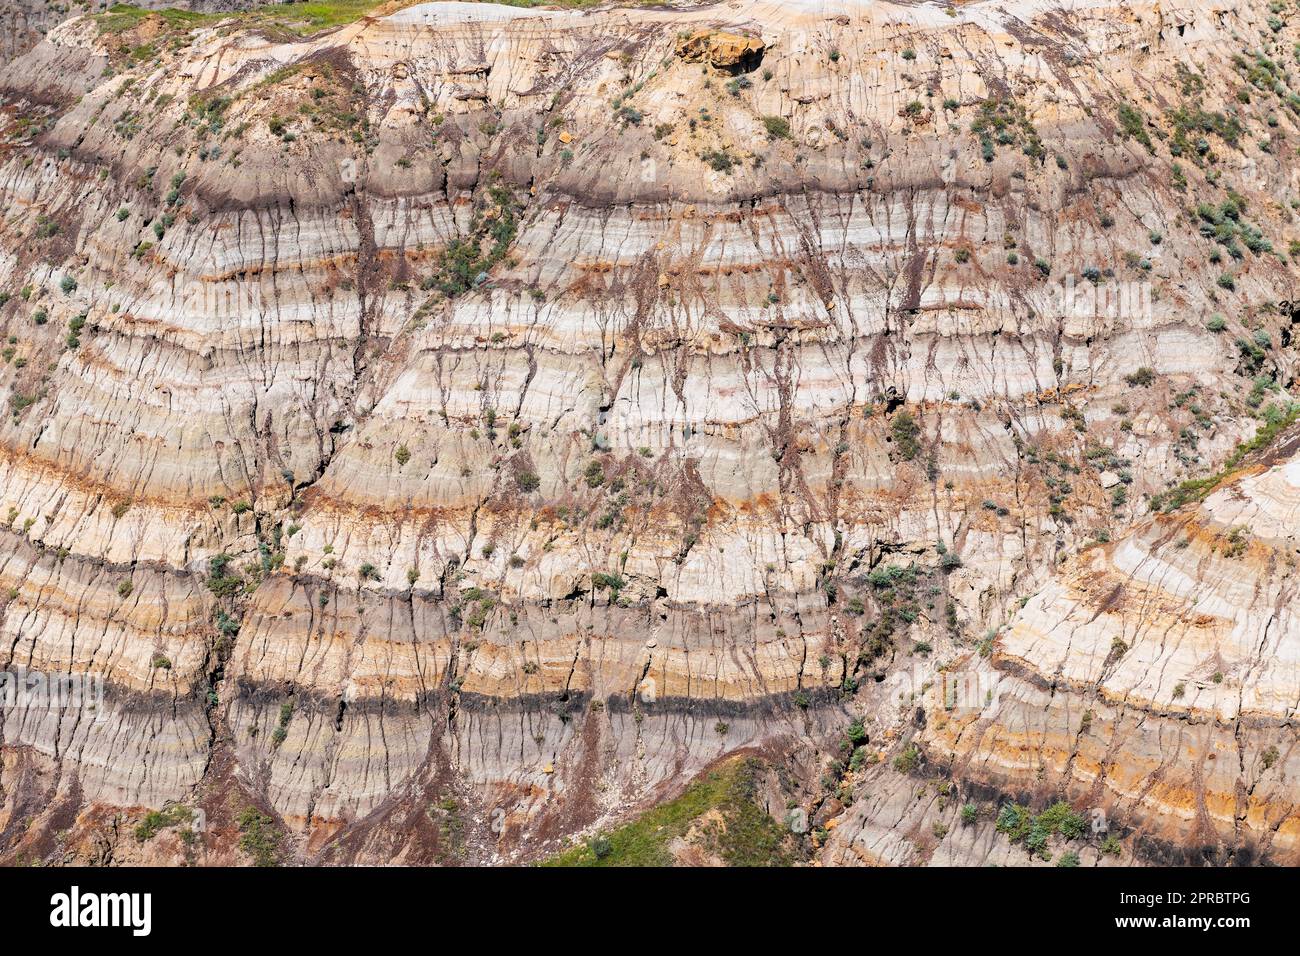 Près des stratifications rocheuses de Drumheller, parc provincial Dinosaur, Drumheller, Alberta, Canada. Banque D'Images